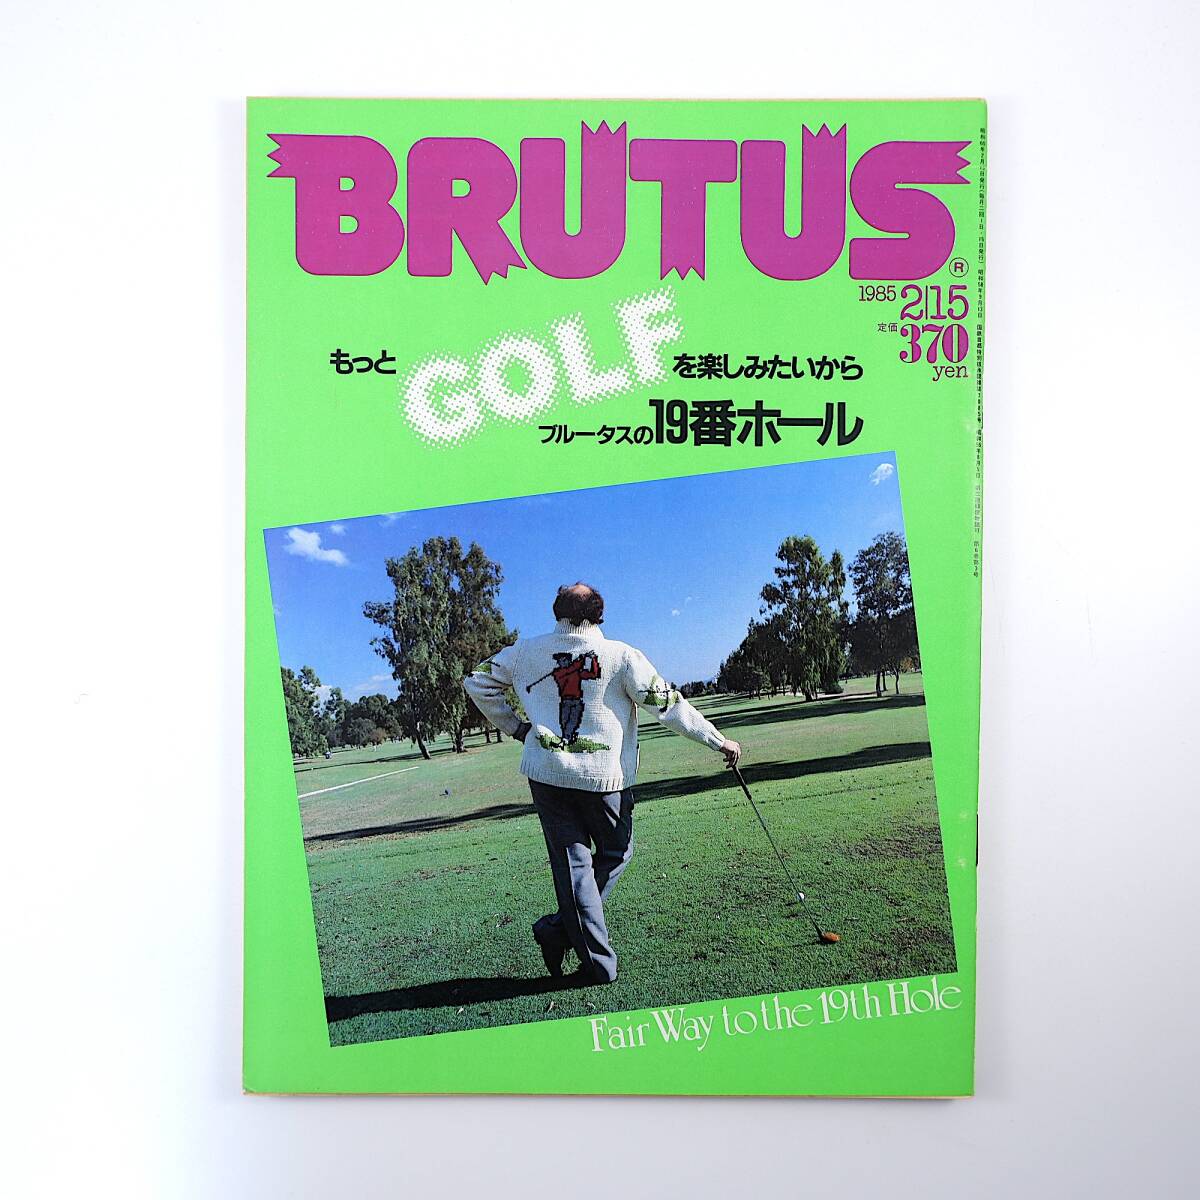 BRUTUS 1985年2月15日号「もっとGOLFを楽しみたいからブルータスの19番ホール」ゴルフ イギリス アメリカ 名ゴルファー列伝 ブルータス_画像1